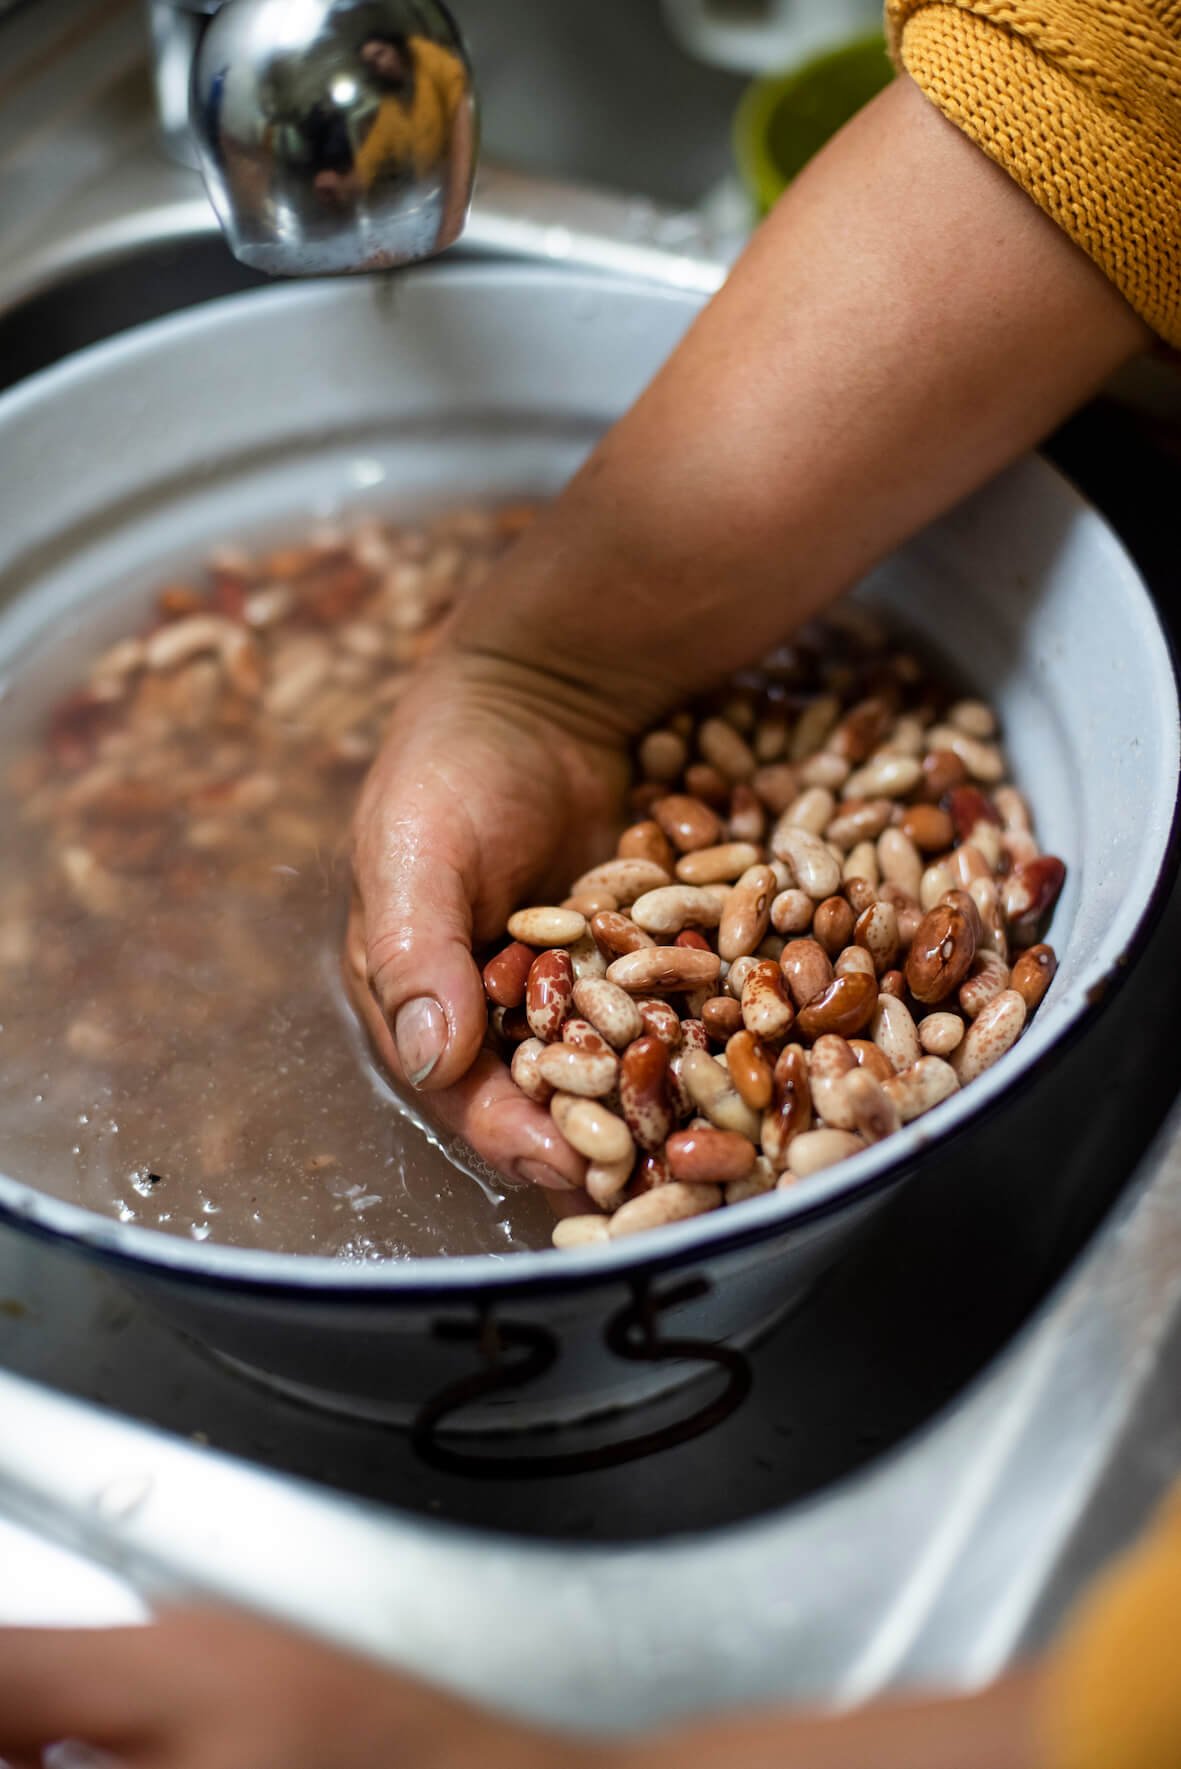 emilia reigado washing pinto beans